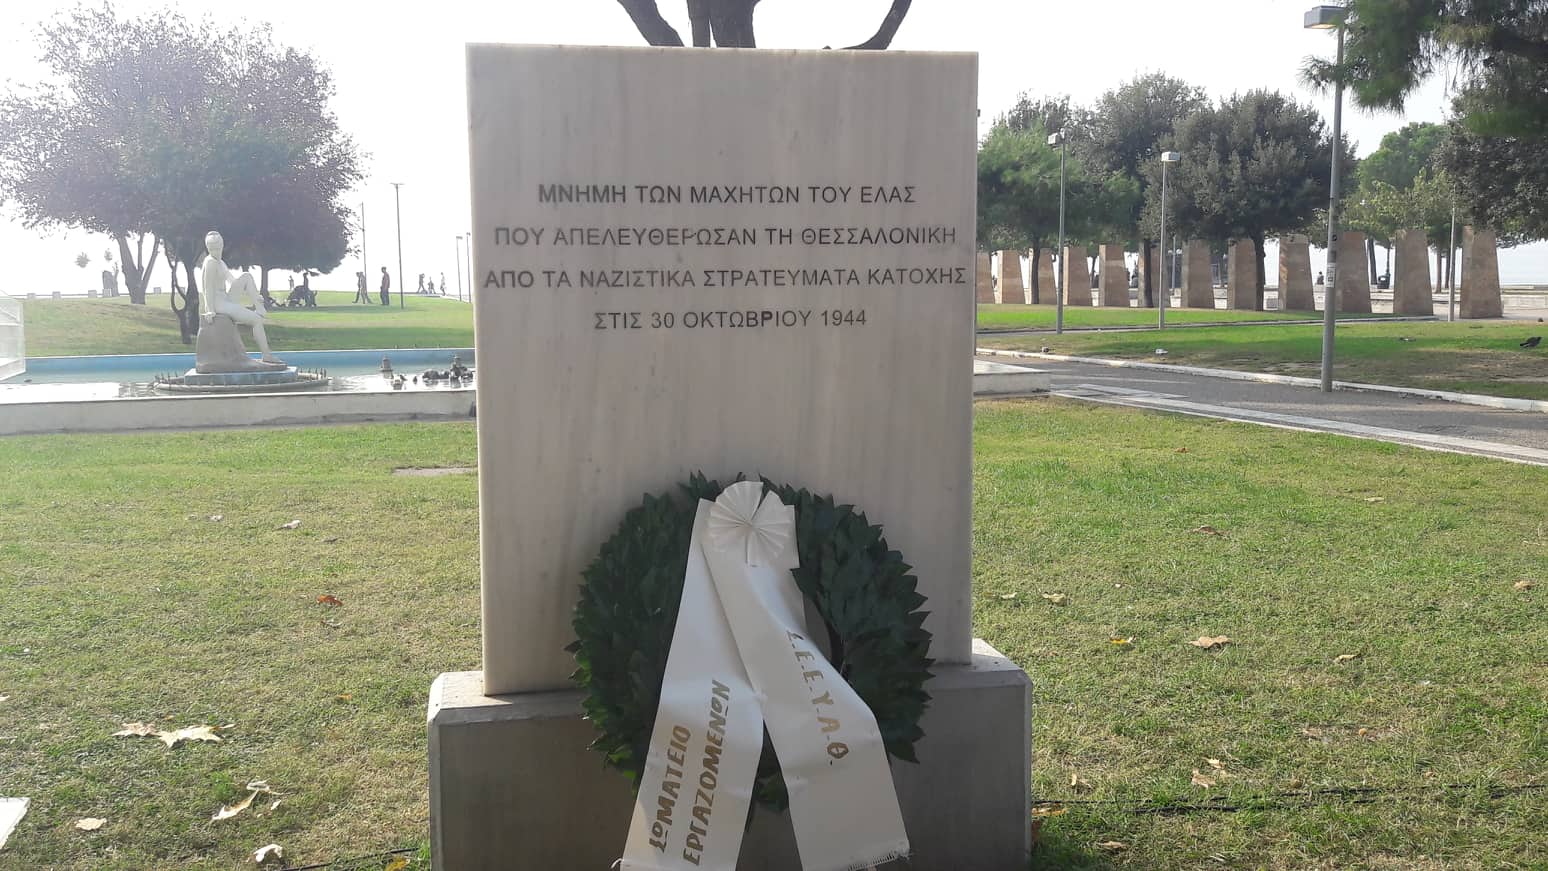 Πόλη Ανάποδα – Δύναμη Ανατροπής για το Μνημείο Απελευθέρωσης: «Μην παραχαράσσετε την ιστορία!»